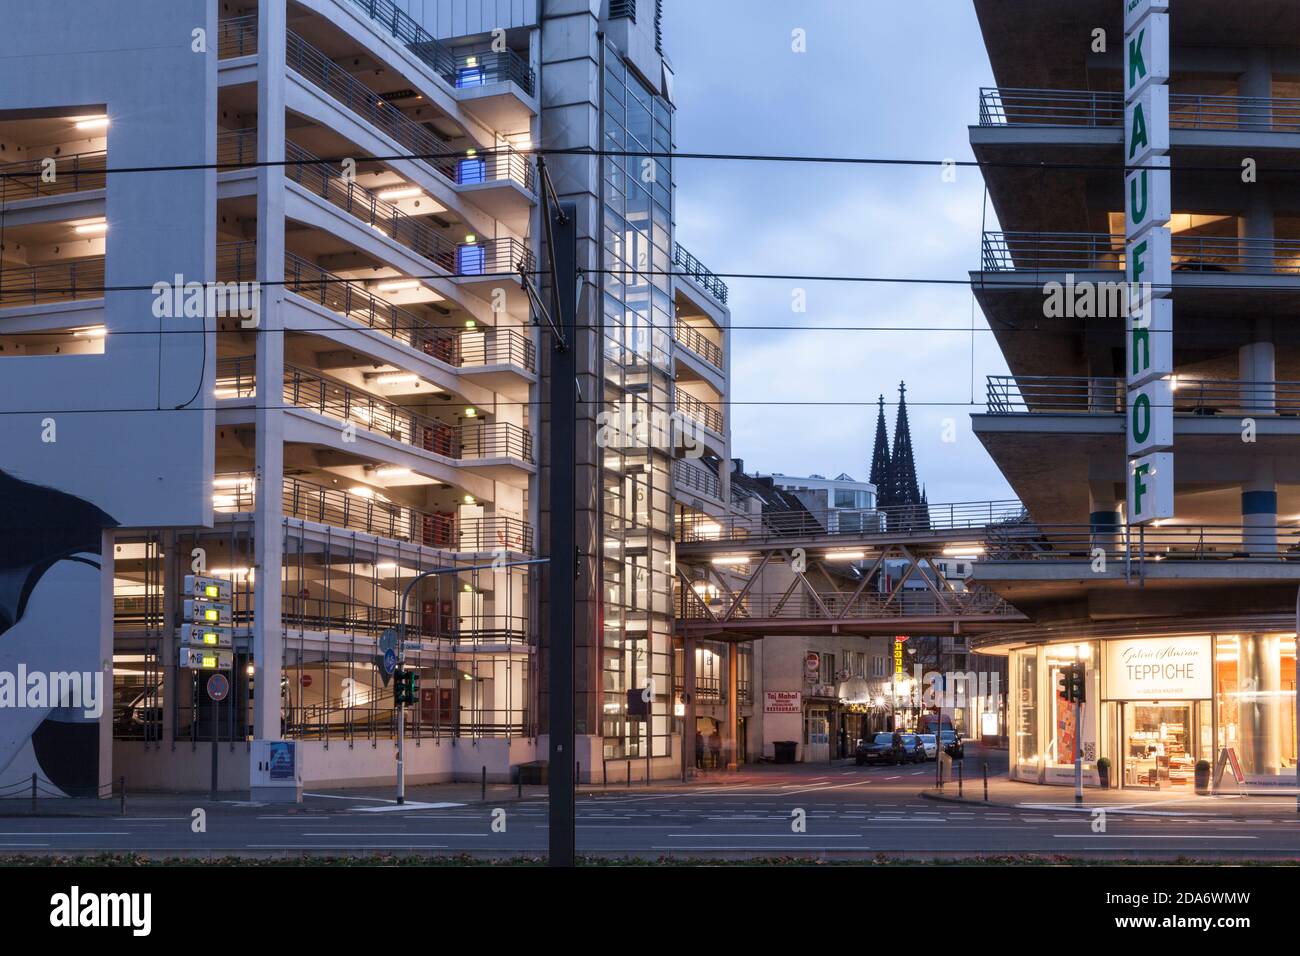 Parkhäuser des Kaufhof Kaufhofs in der Caecilienstraße, Blick auf das Katehdral, Köln, Deutschland. Parkhäuser des Kaufhofs an der Stockfoto